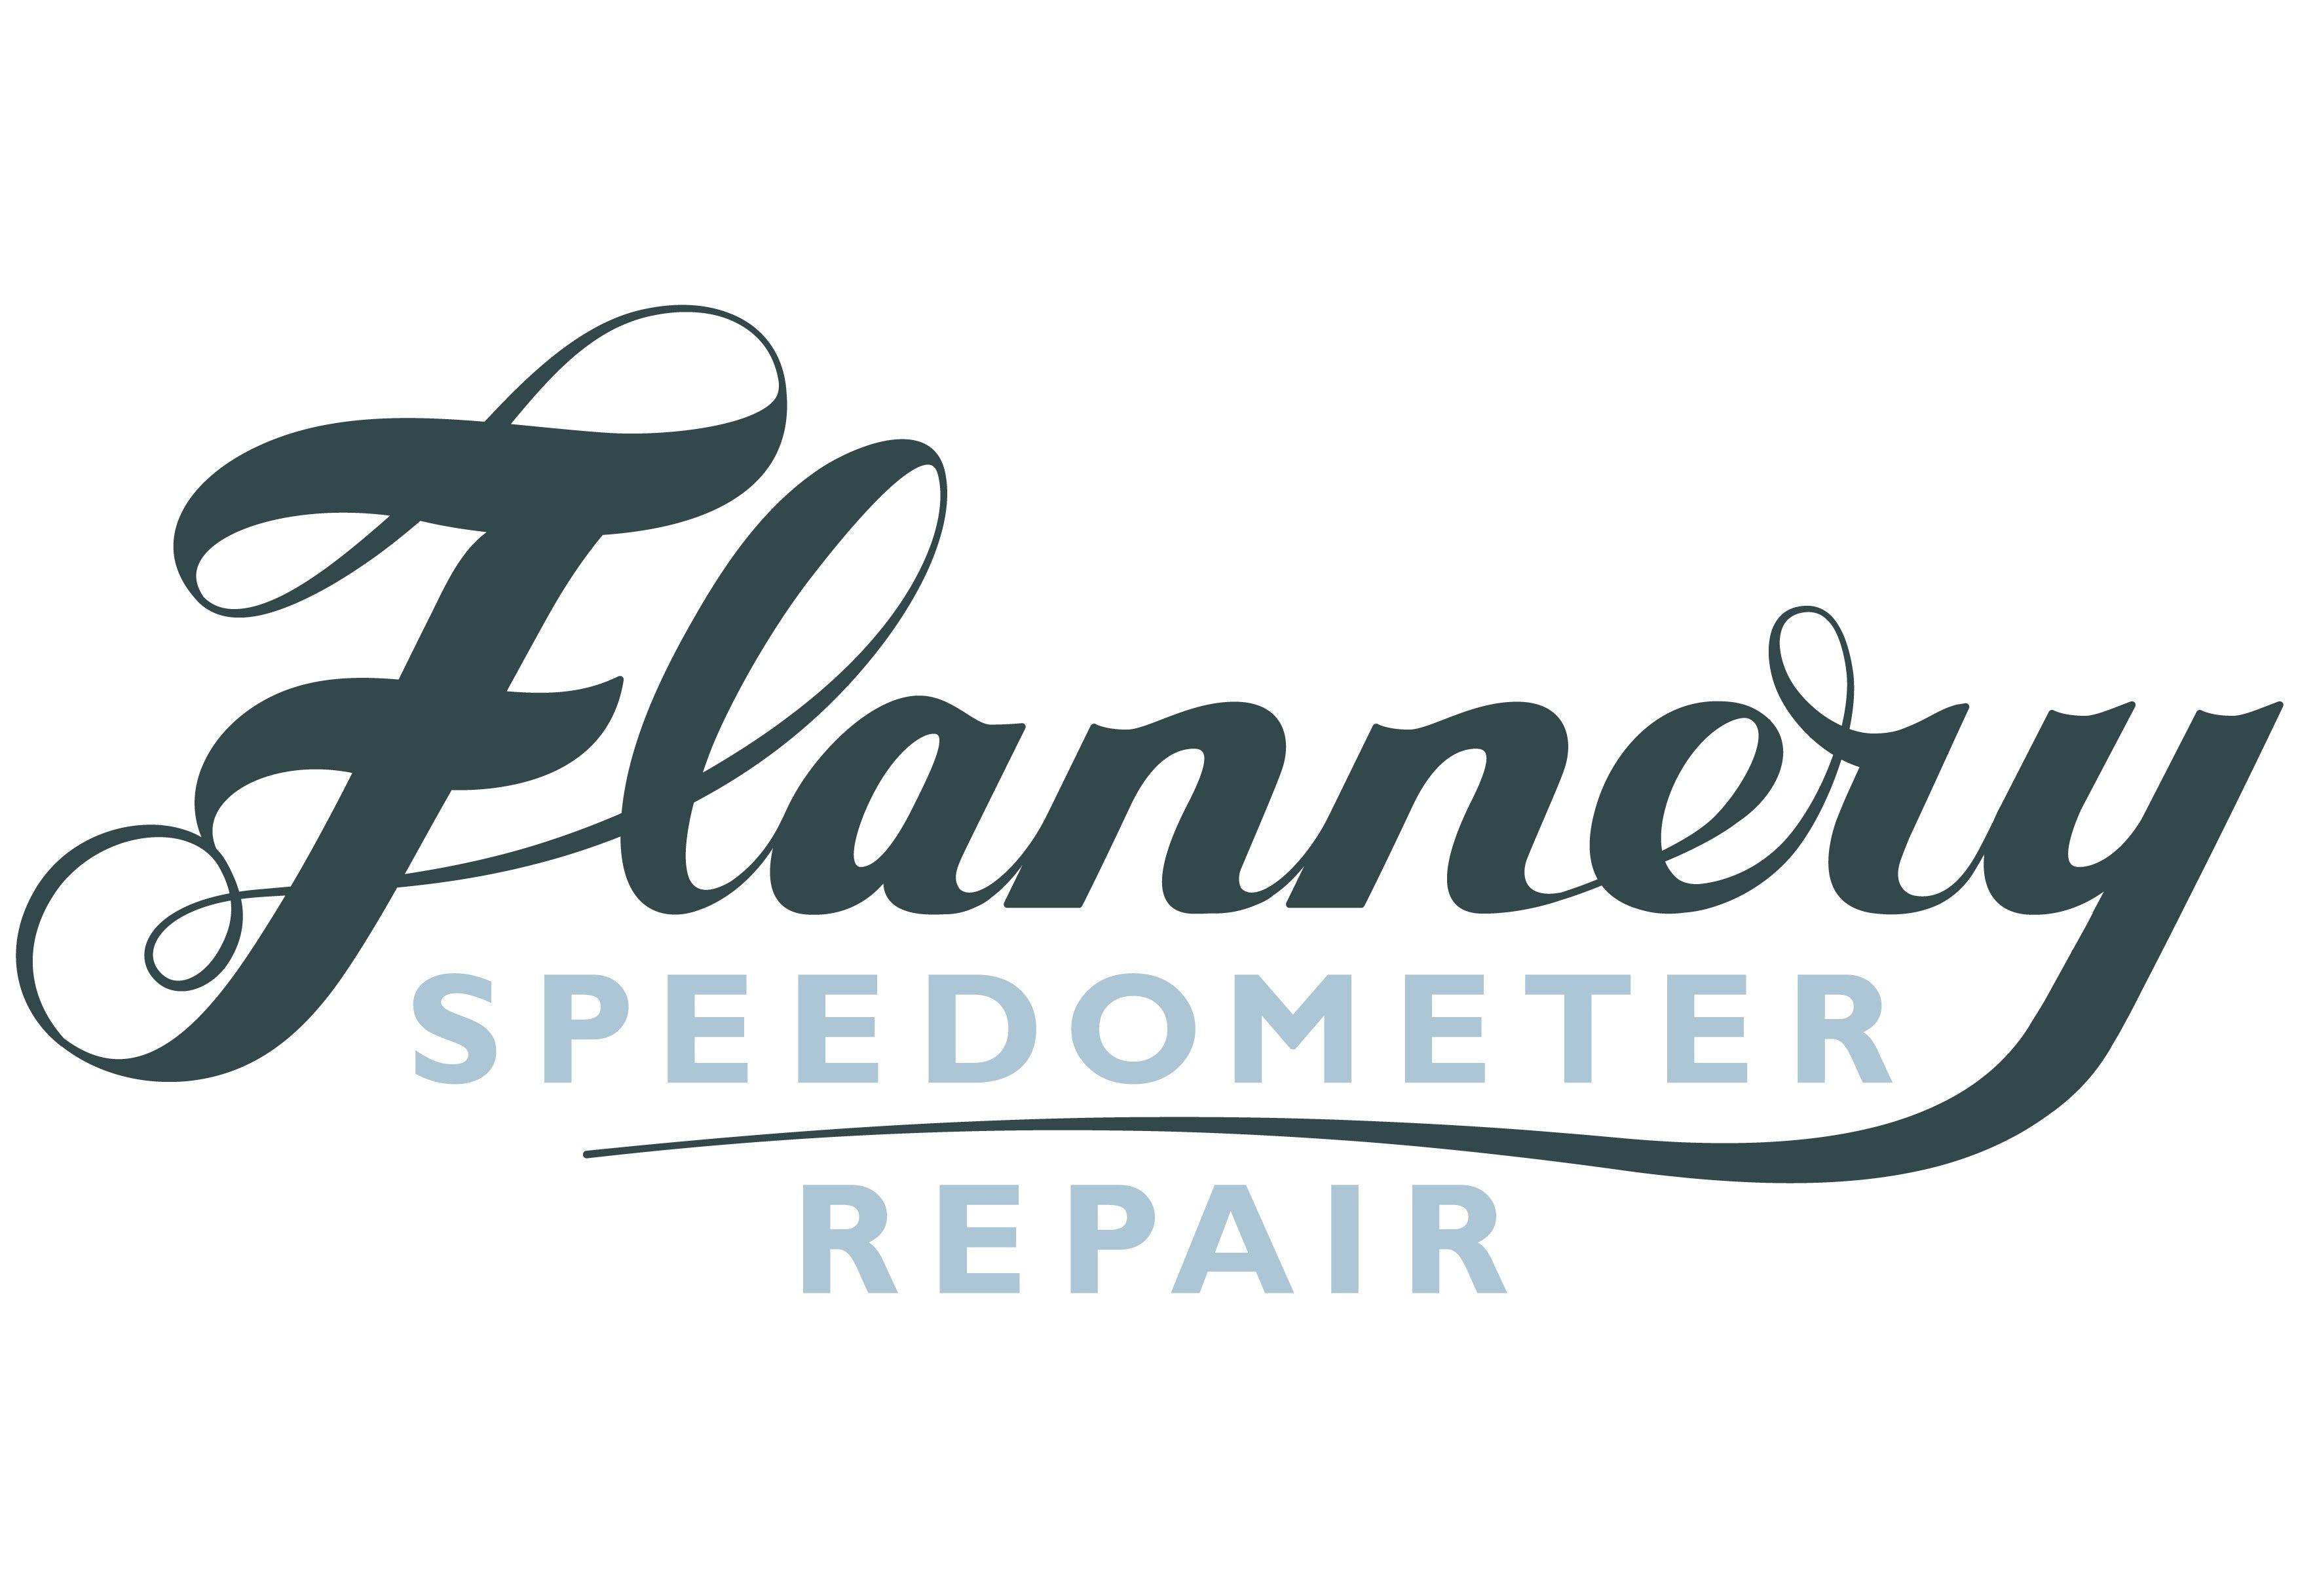 Flannery Speedometer Repair